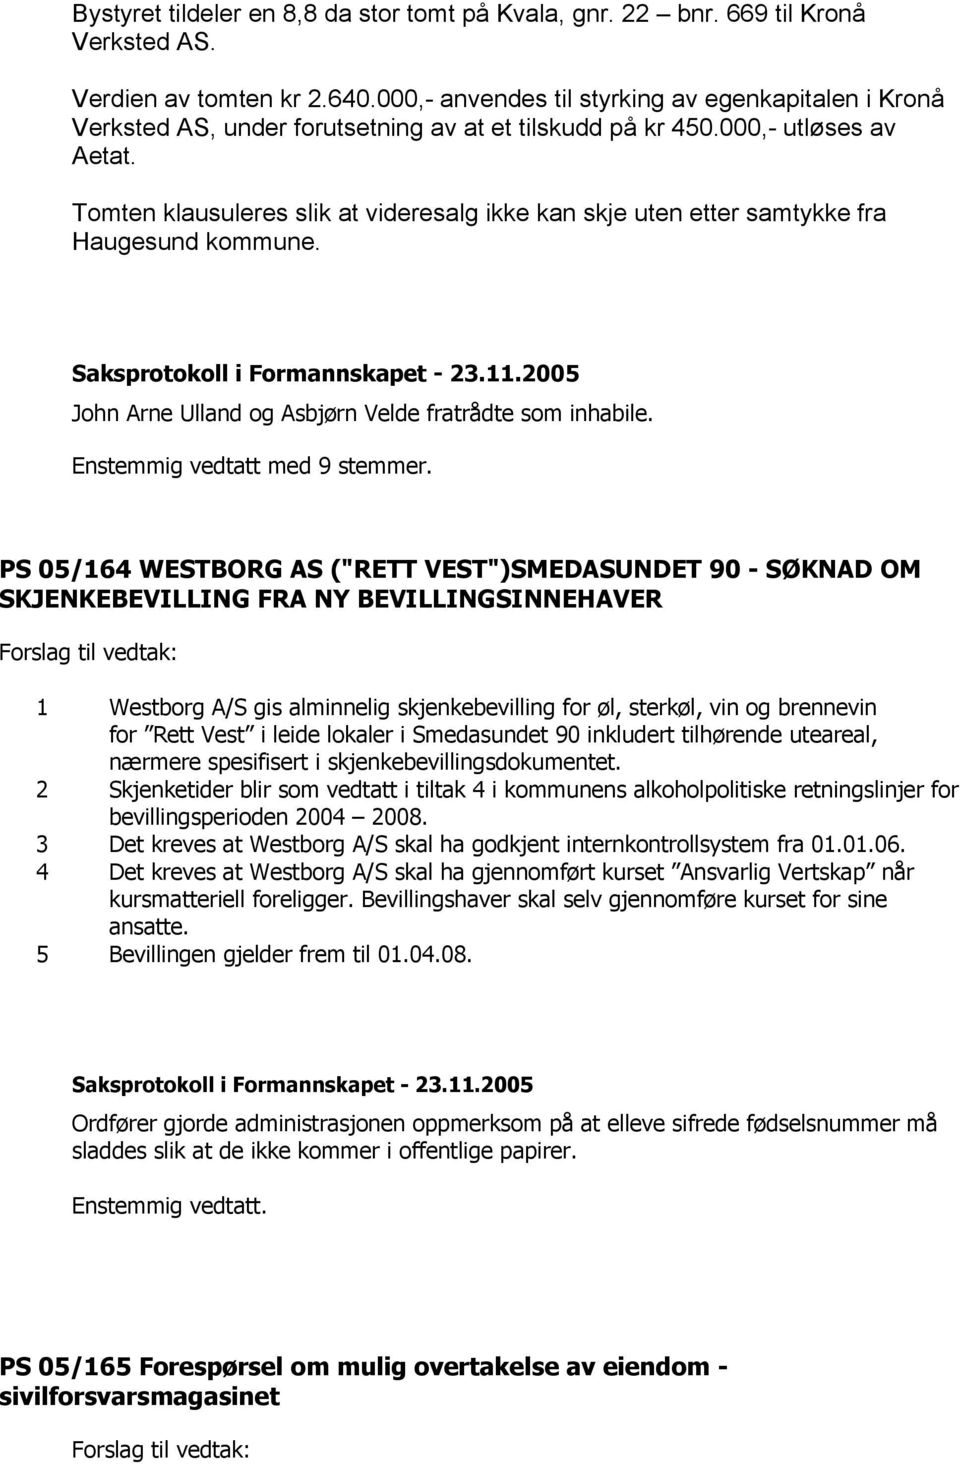 Tomten klausuleres slik at videresalg ikke kan skje uten etter samtykke fra Haugesund kommune. John Arne Ulland og Asbjørn Velde fratrådte som inhabile. Enstemmig vedtatt med 9 stemmer.